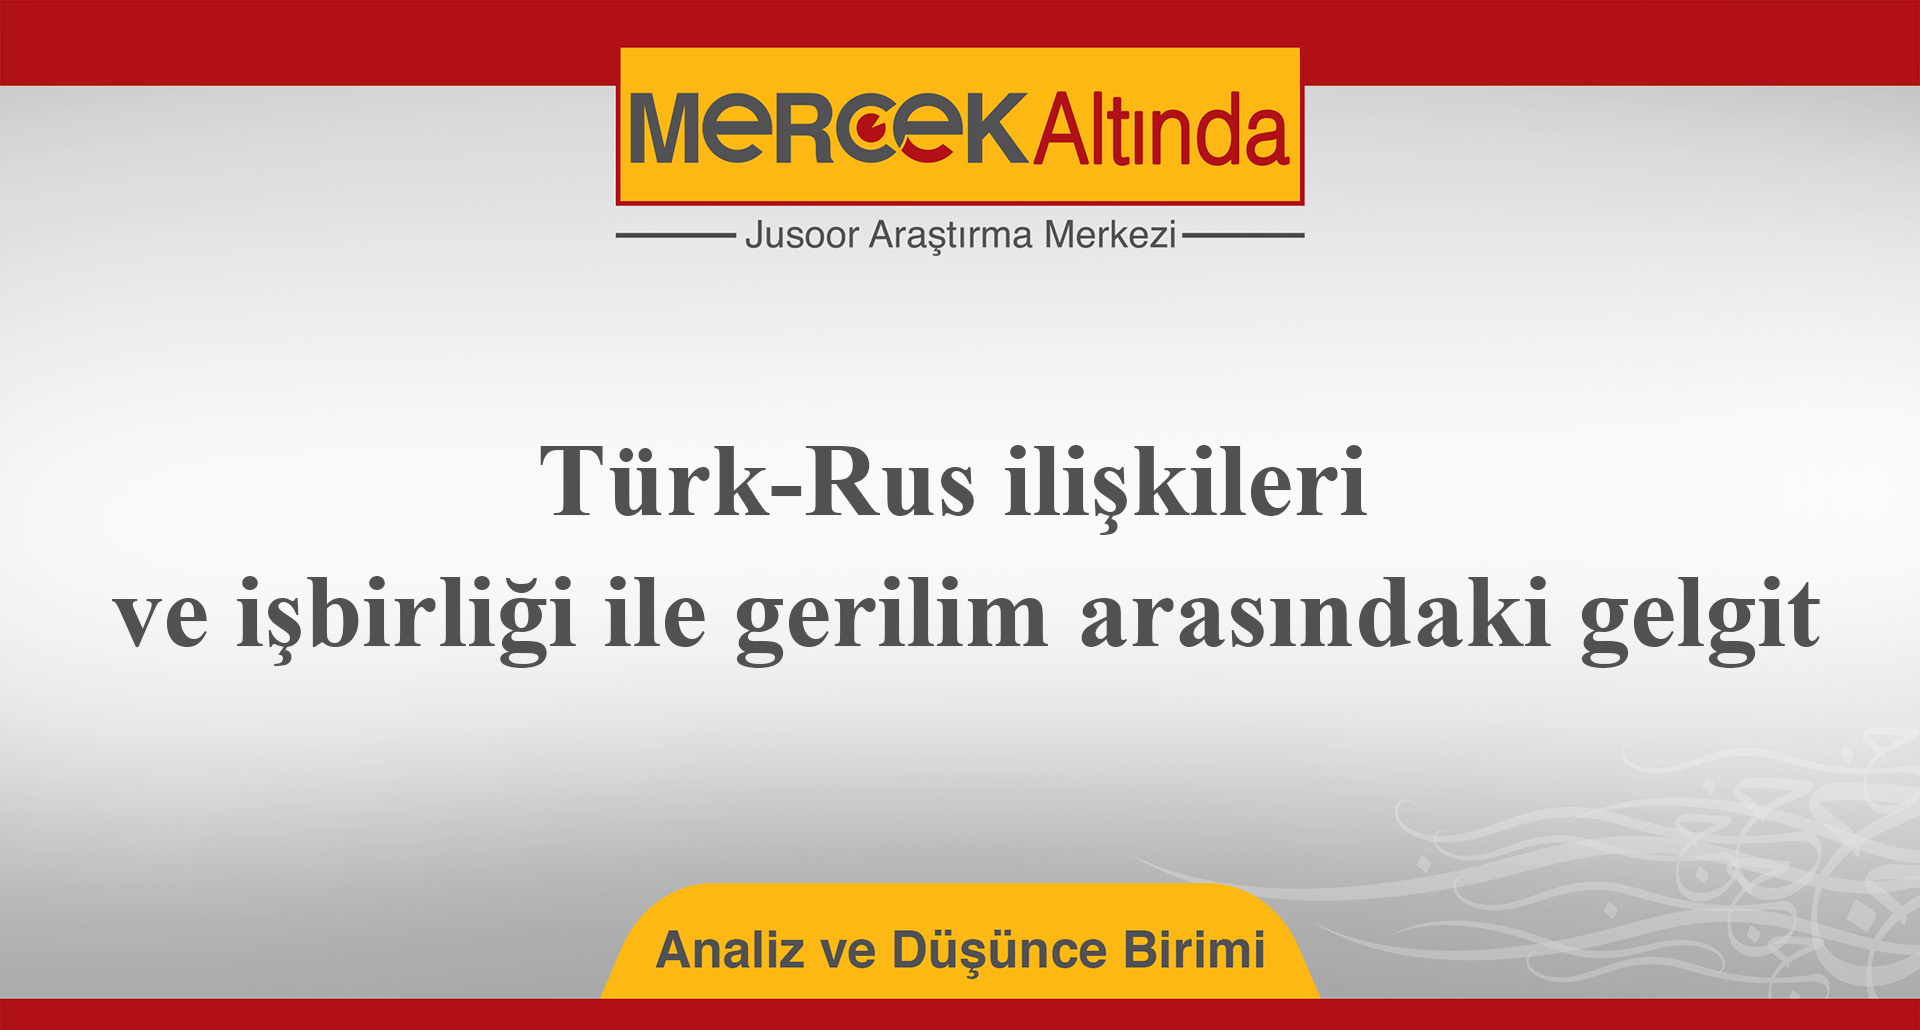 Türk-Rus ilişkileri ve işbirliği ile gerilim arasındaki gelgit